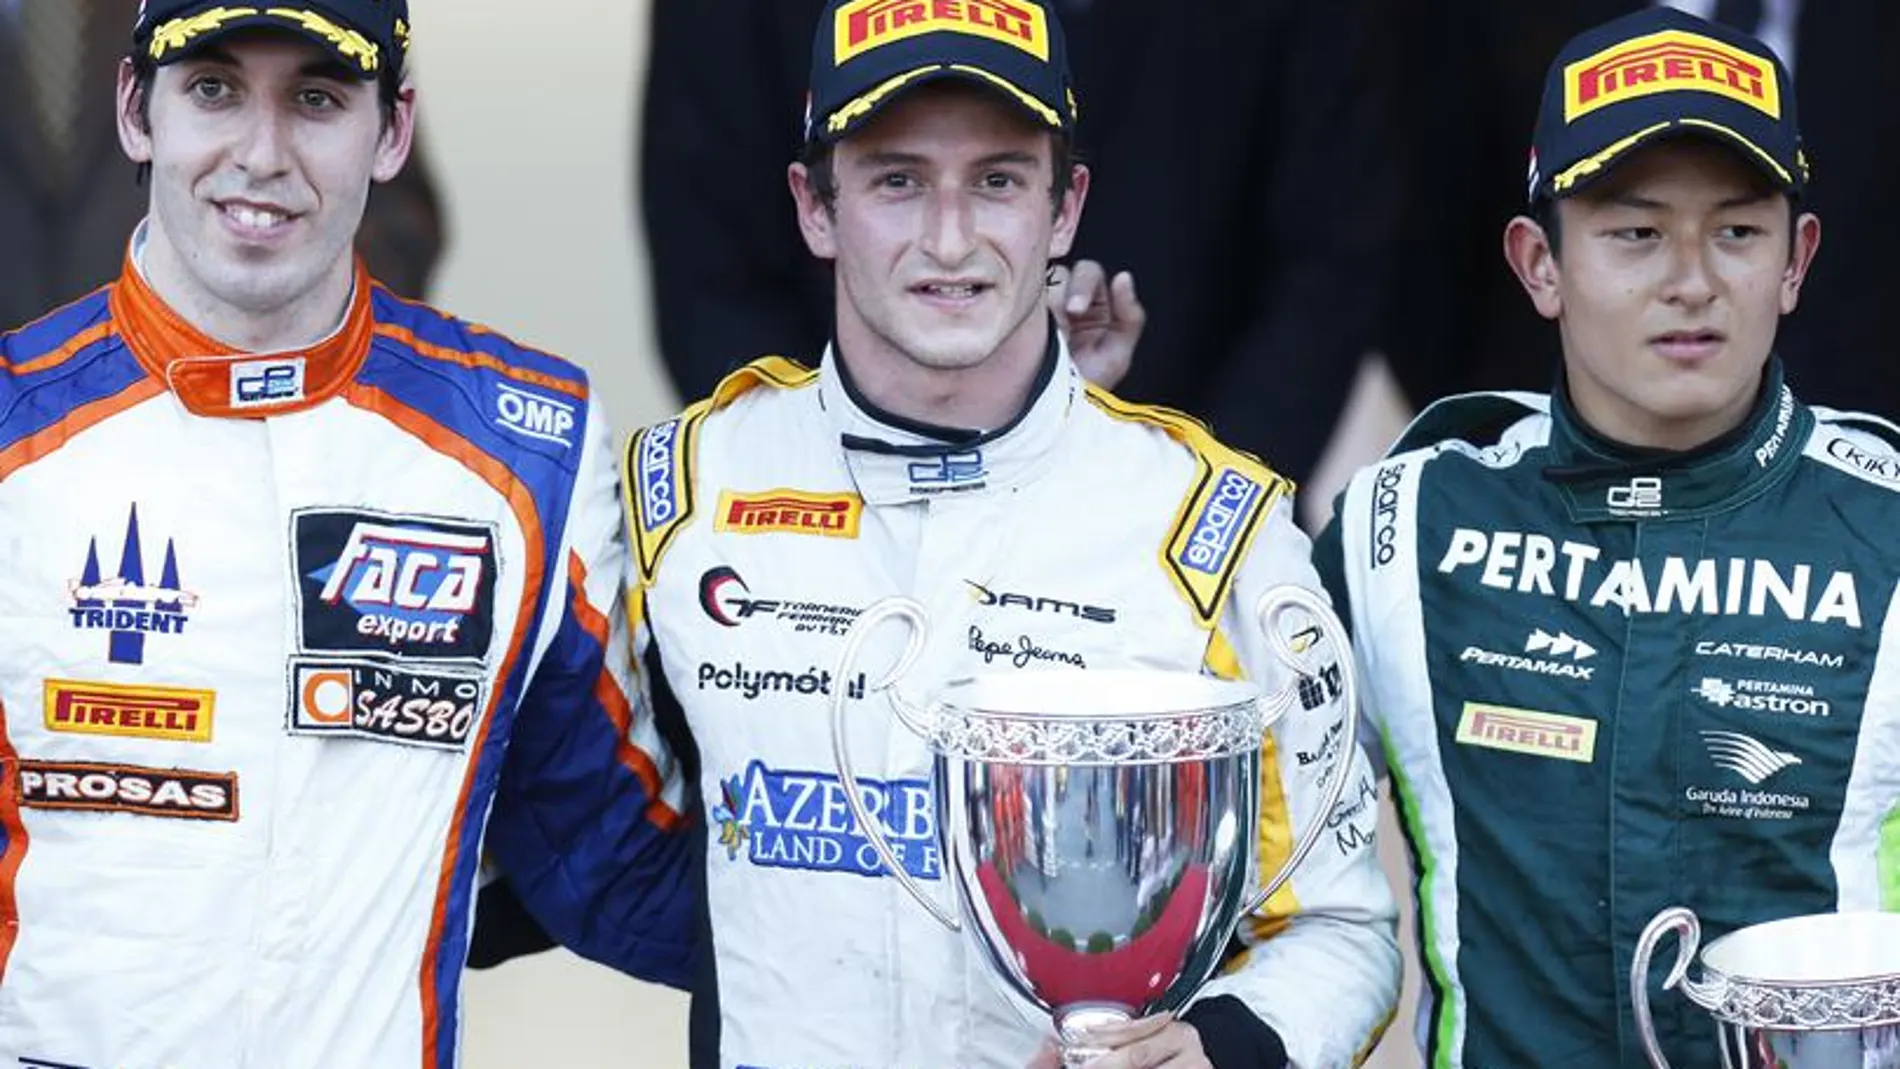 El podio de la segunda carrera de Mónaco de GP2